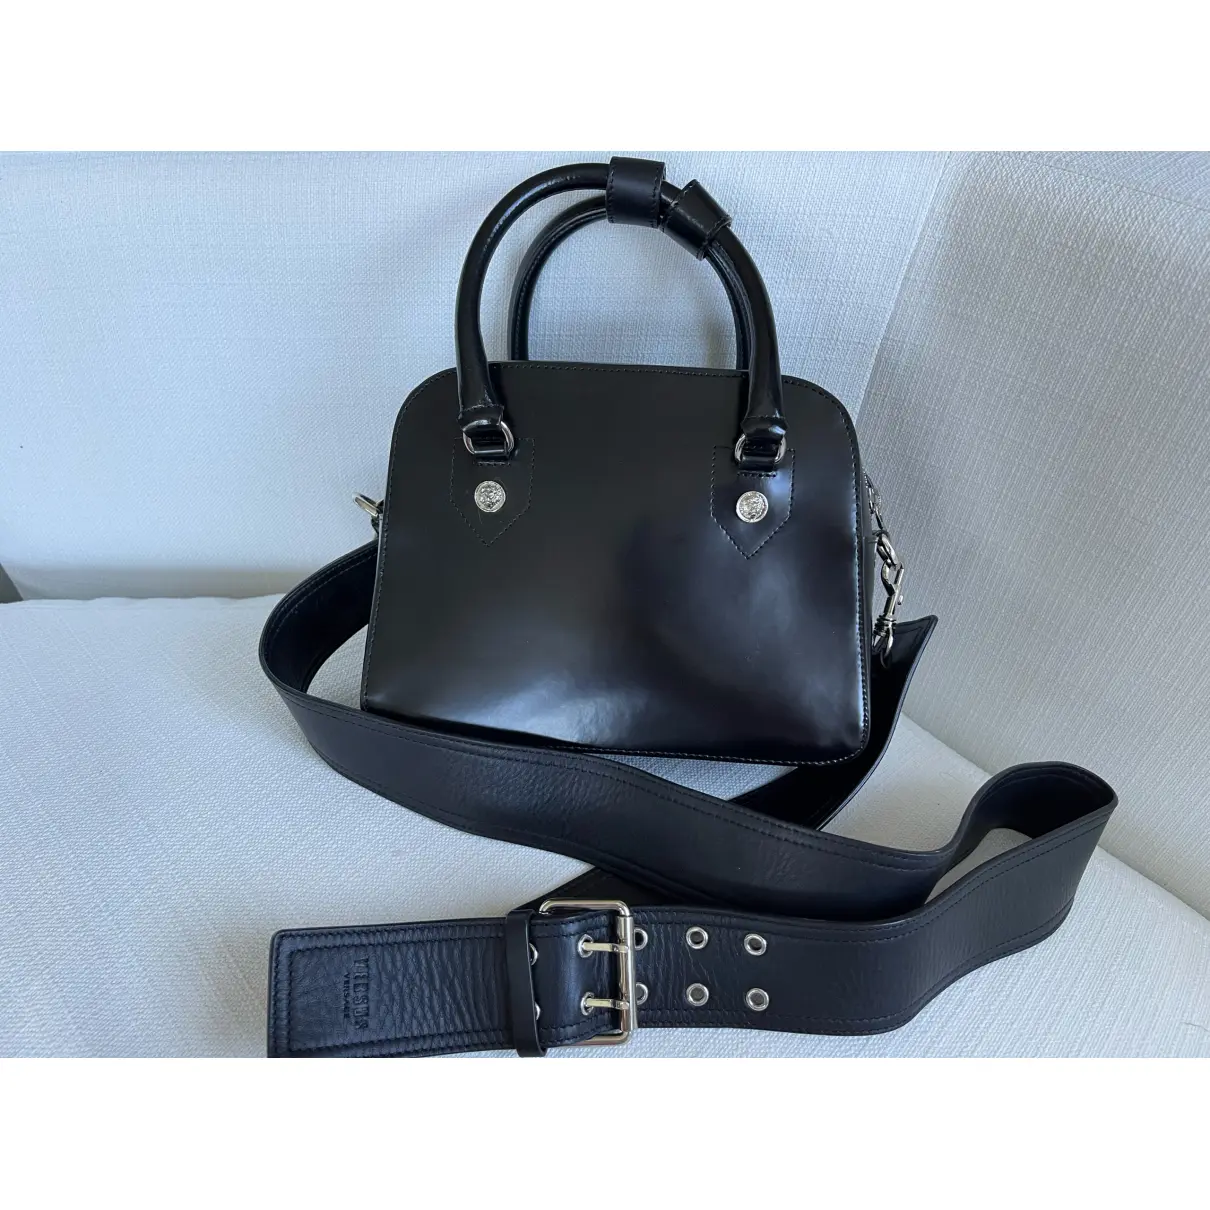 Buy Versus Leather handbag online